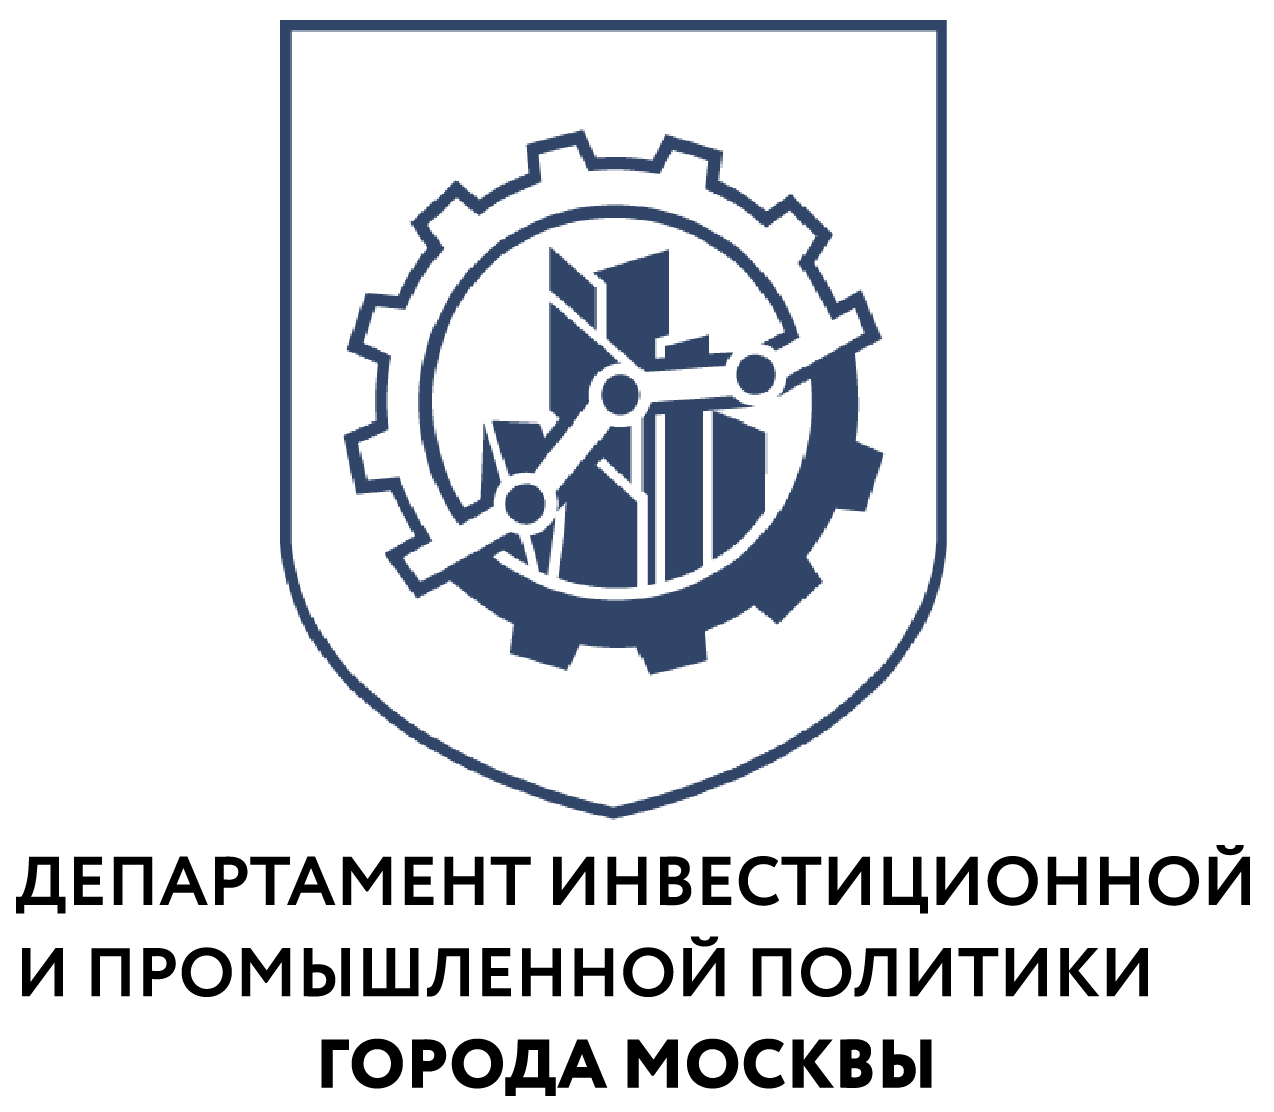 «Московская техническая школа» подготовила свыше 200 специалистов в области искусственного интеллекта - фото 1